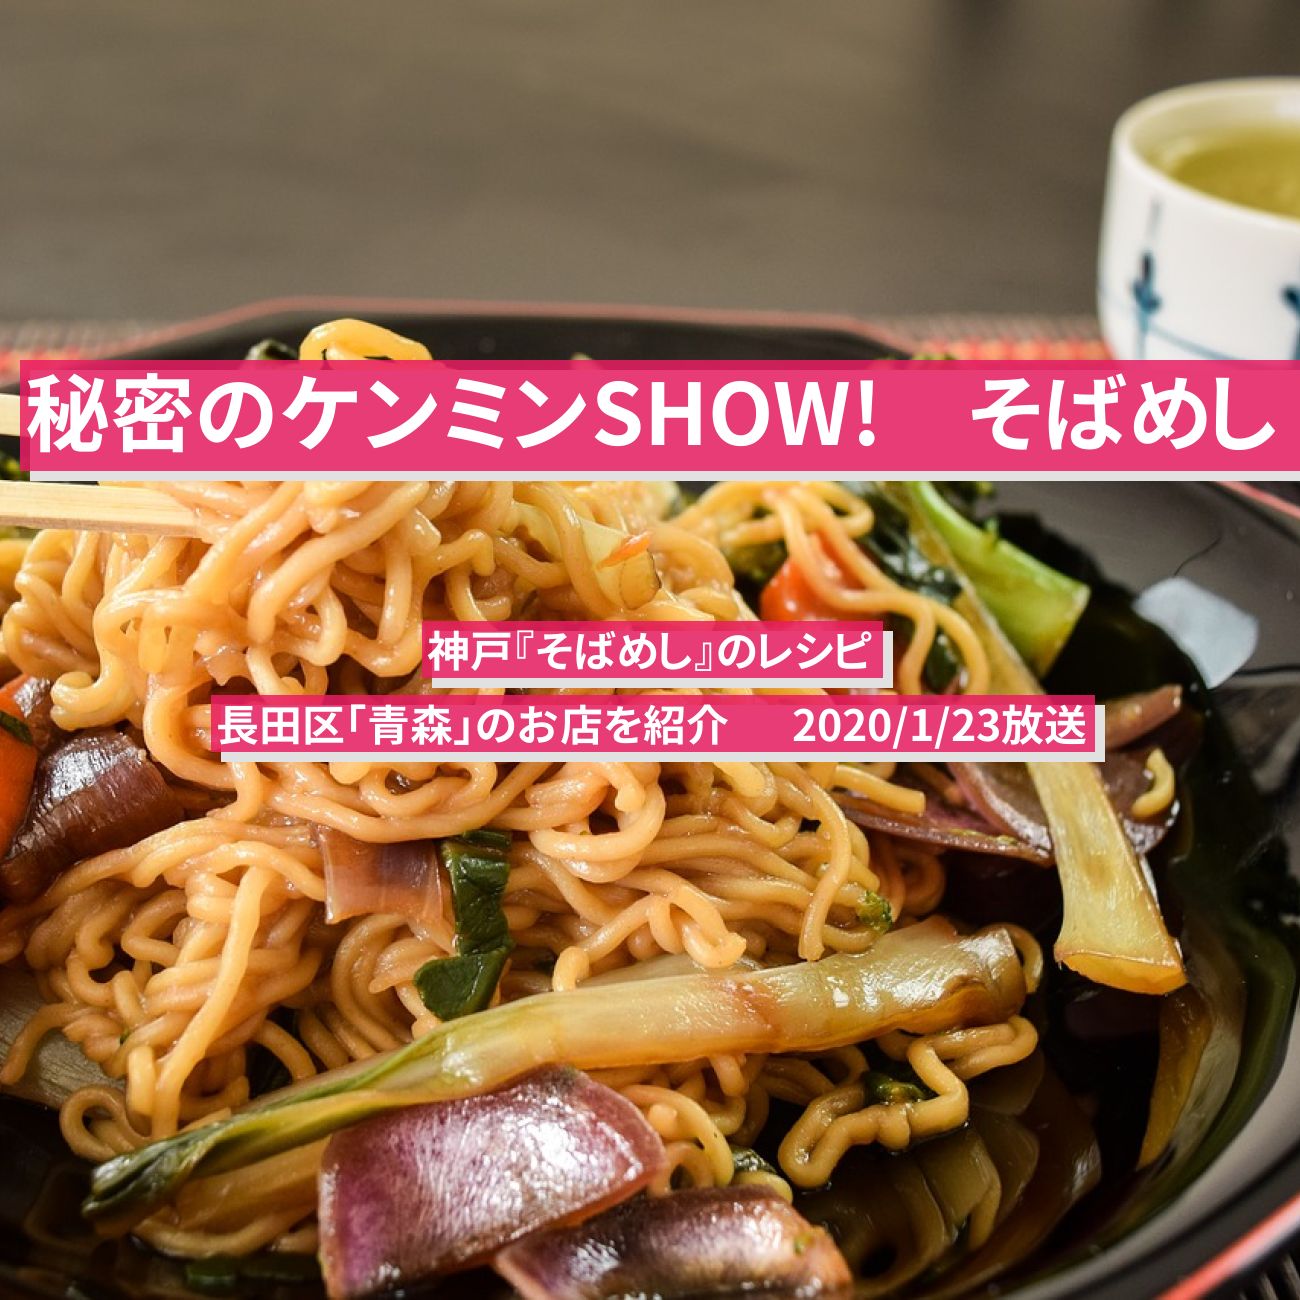 【ケンミンショー】神戸『そばめし』のレシピ・お店を紹介  秘密のケンミンSHOW!　2020/1/23放送